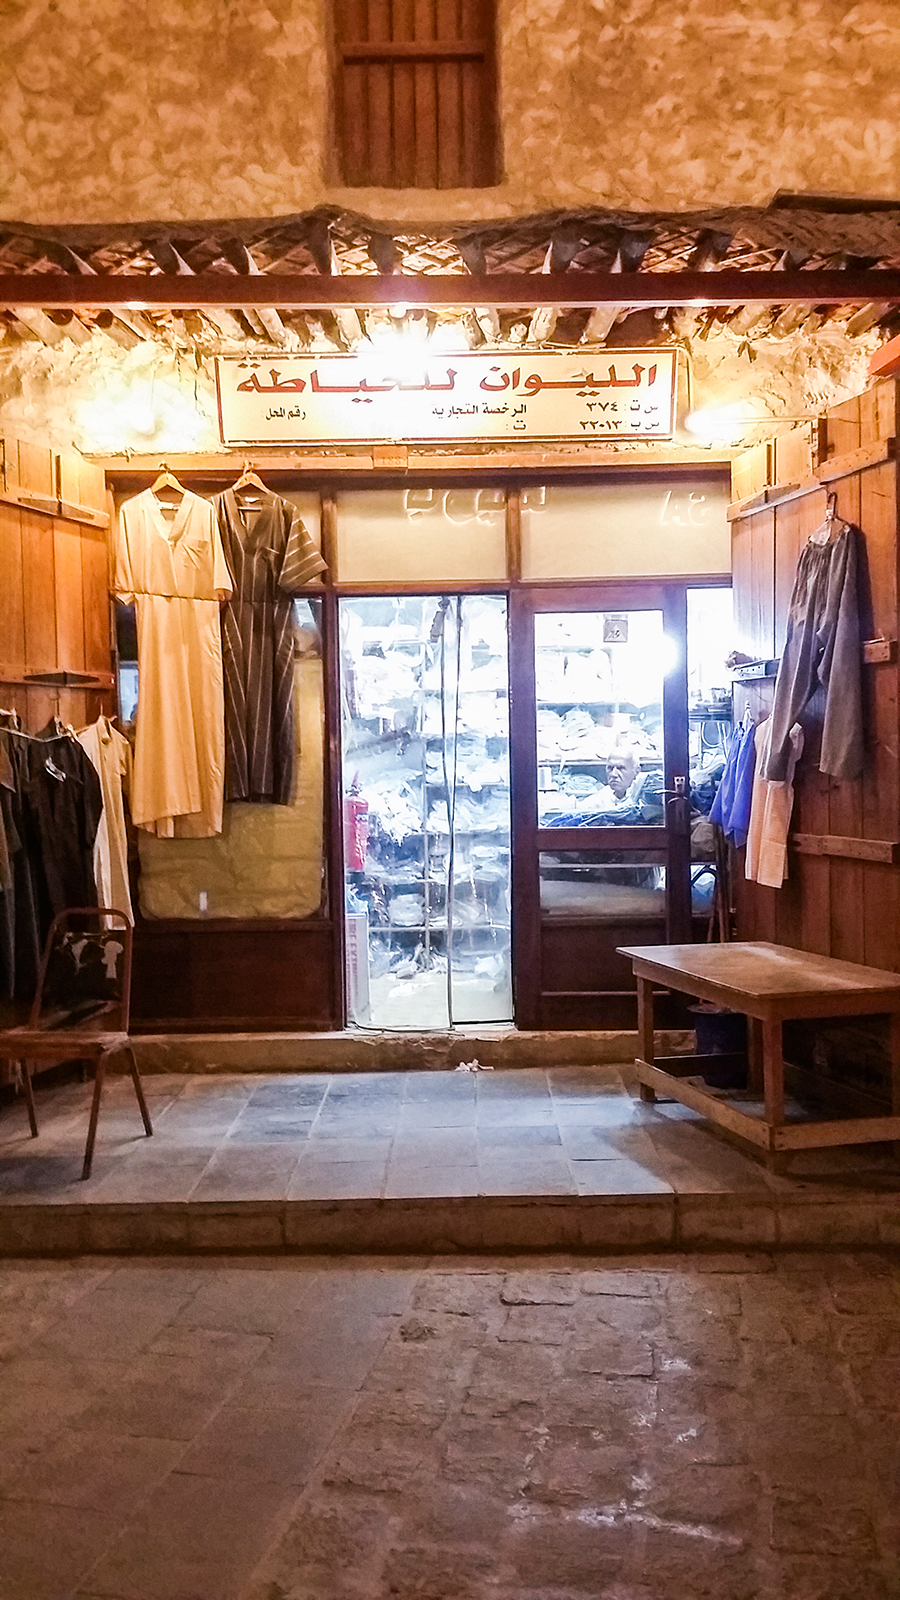 Clothing shop at Souq Waqif (Ø³ÙˆÙ‚ ÙˆØ§Ù‚Ù), Doha, Qatar.